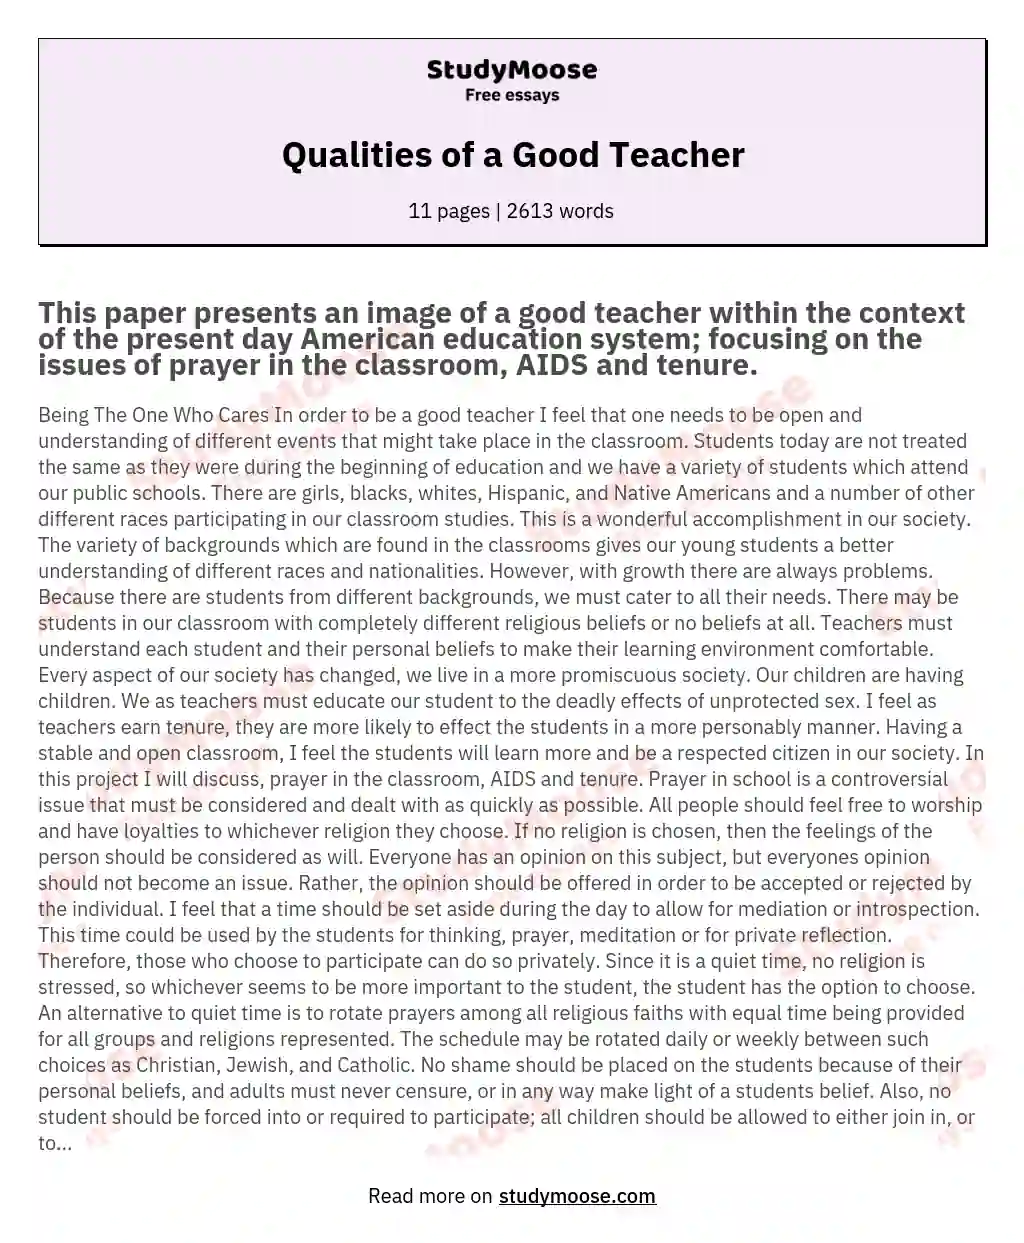 Qualities of a Good Teacher essay